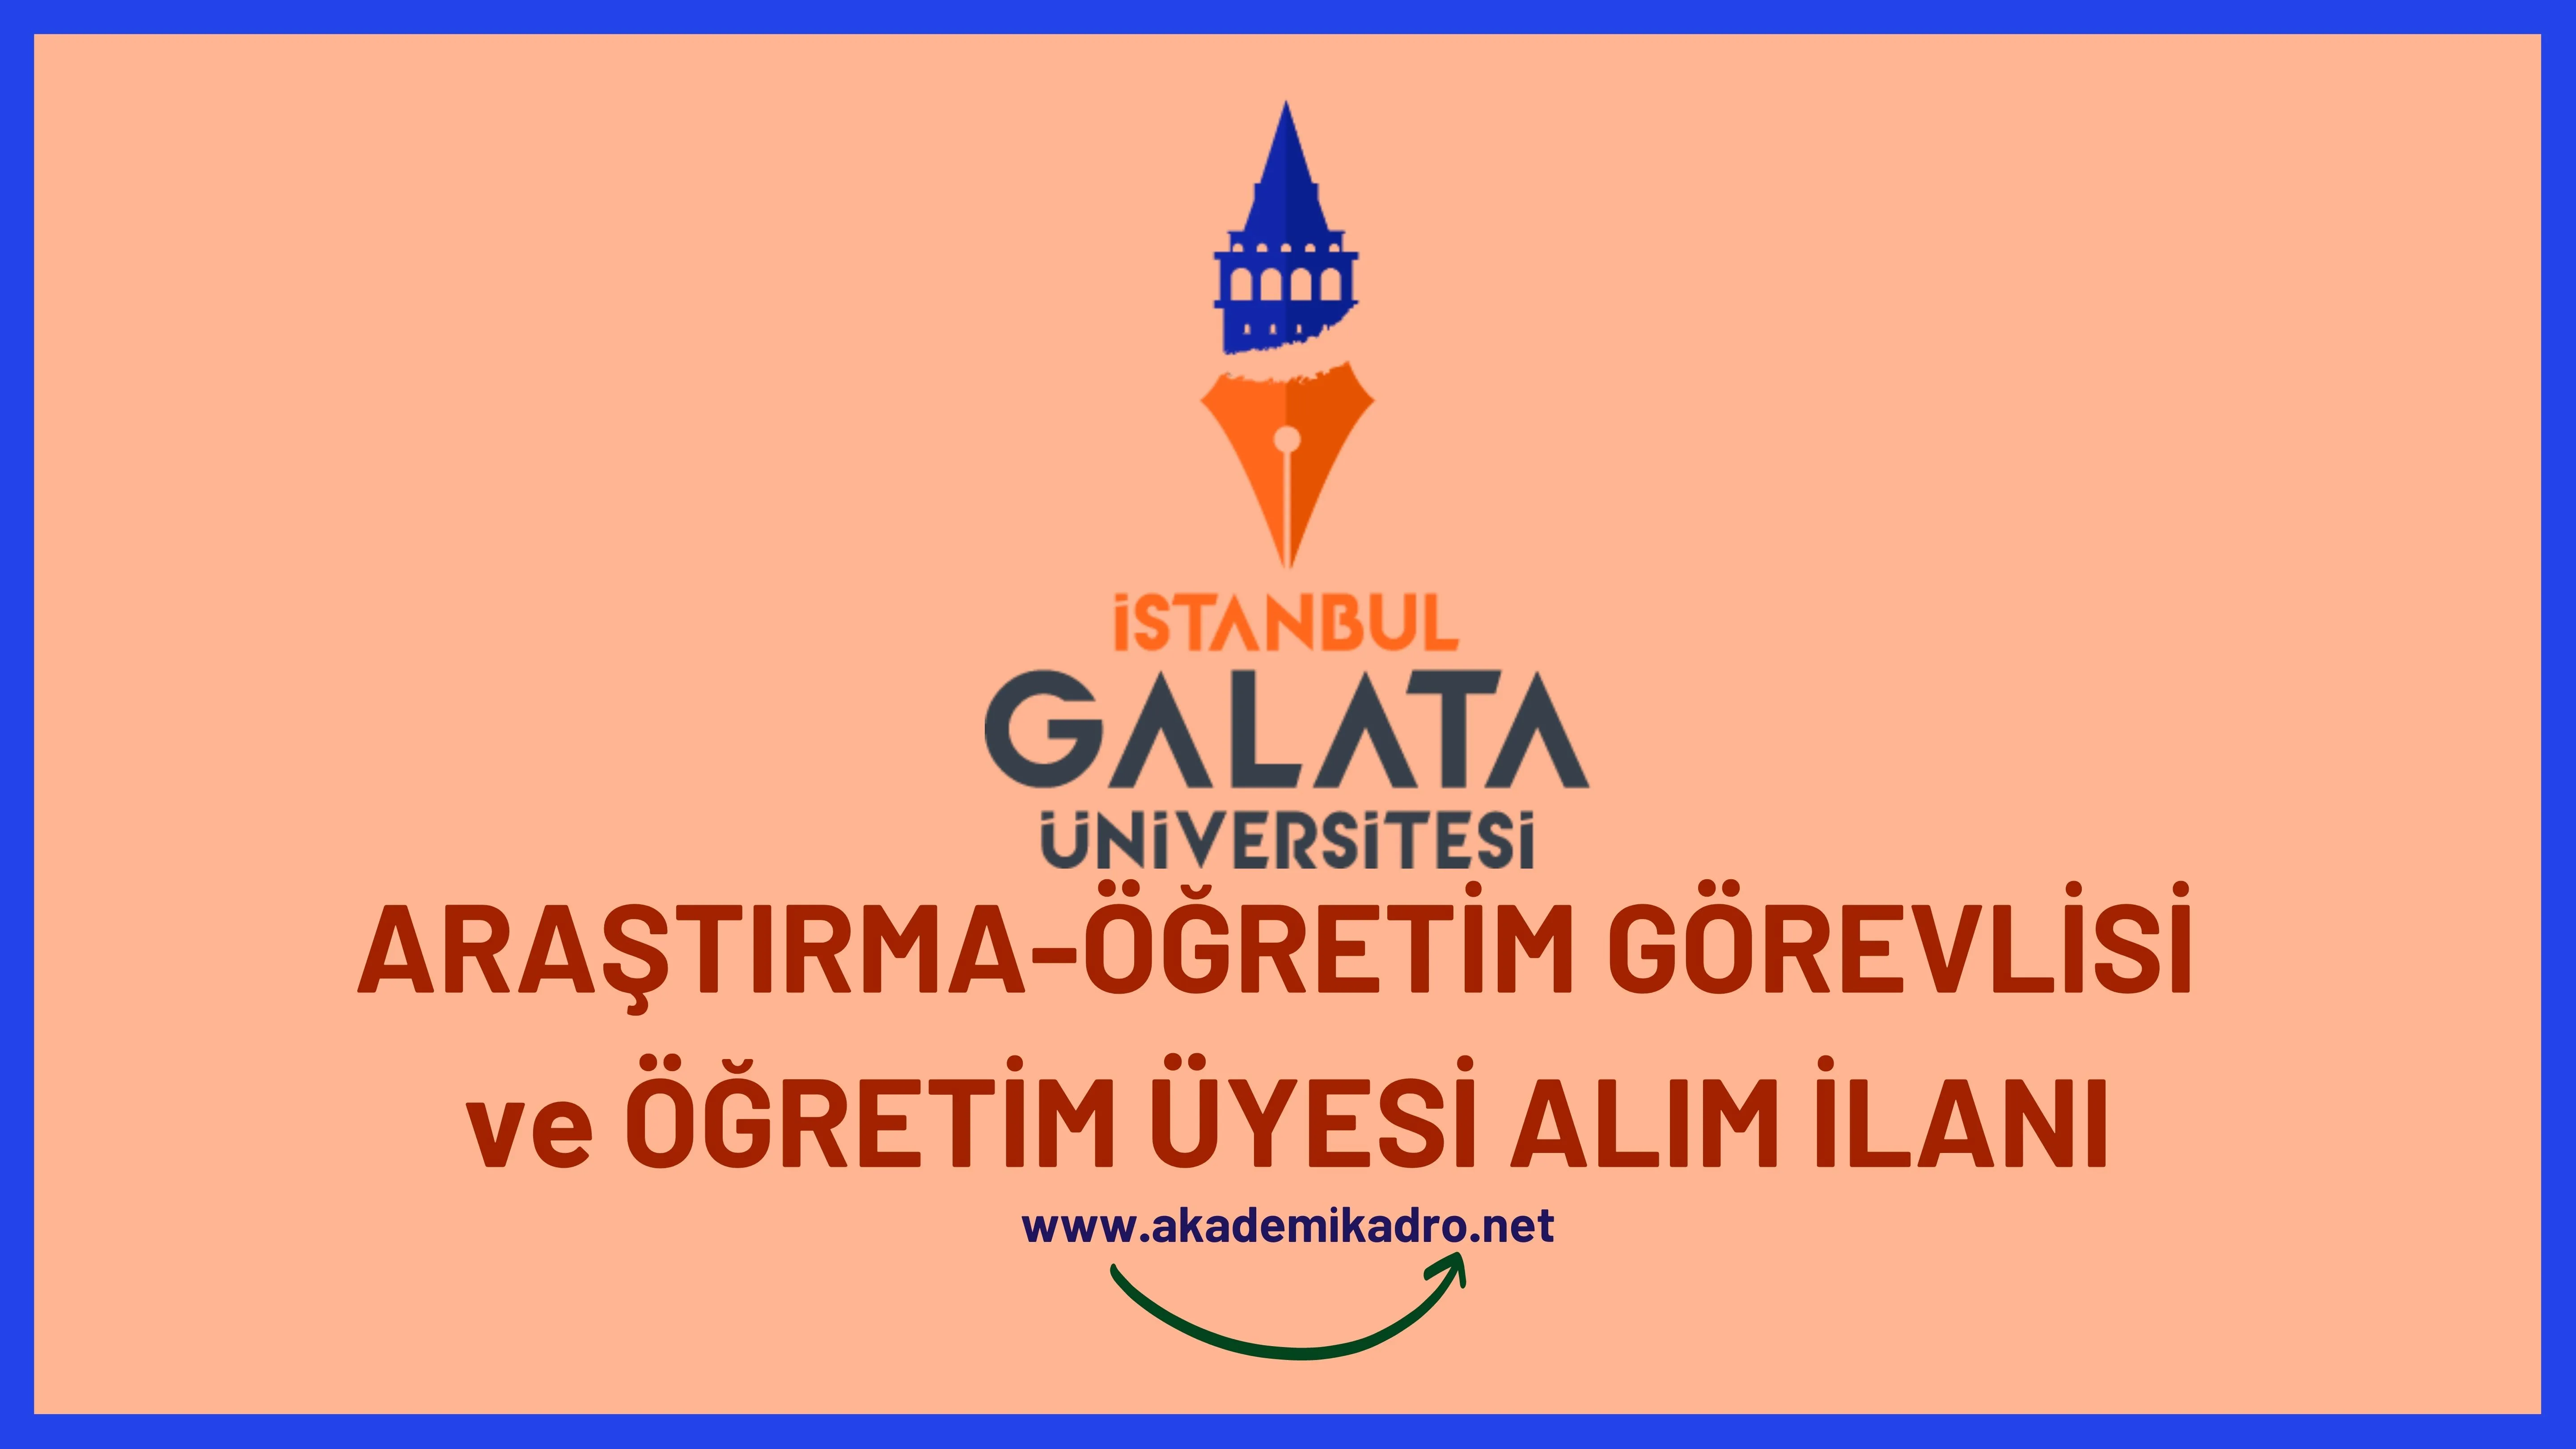 İstanbul Galata Üniversitesi birçok alandan 25 akademik personel alacak.